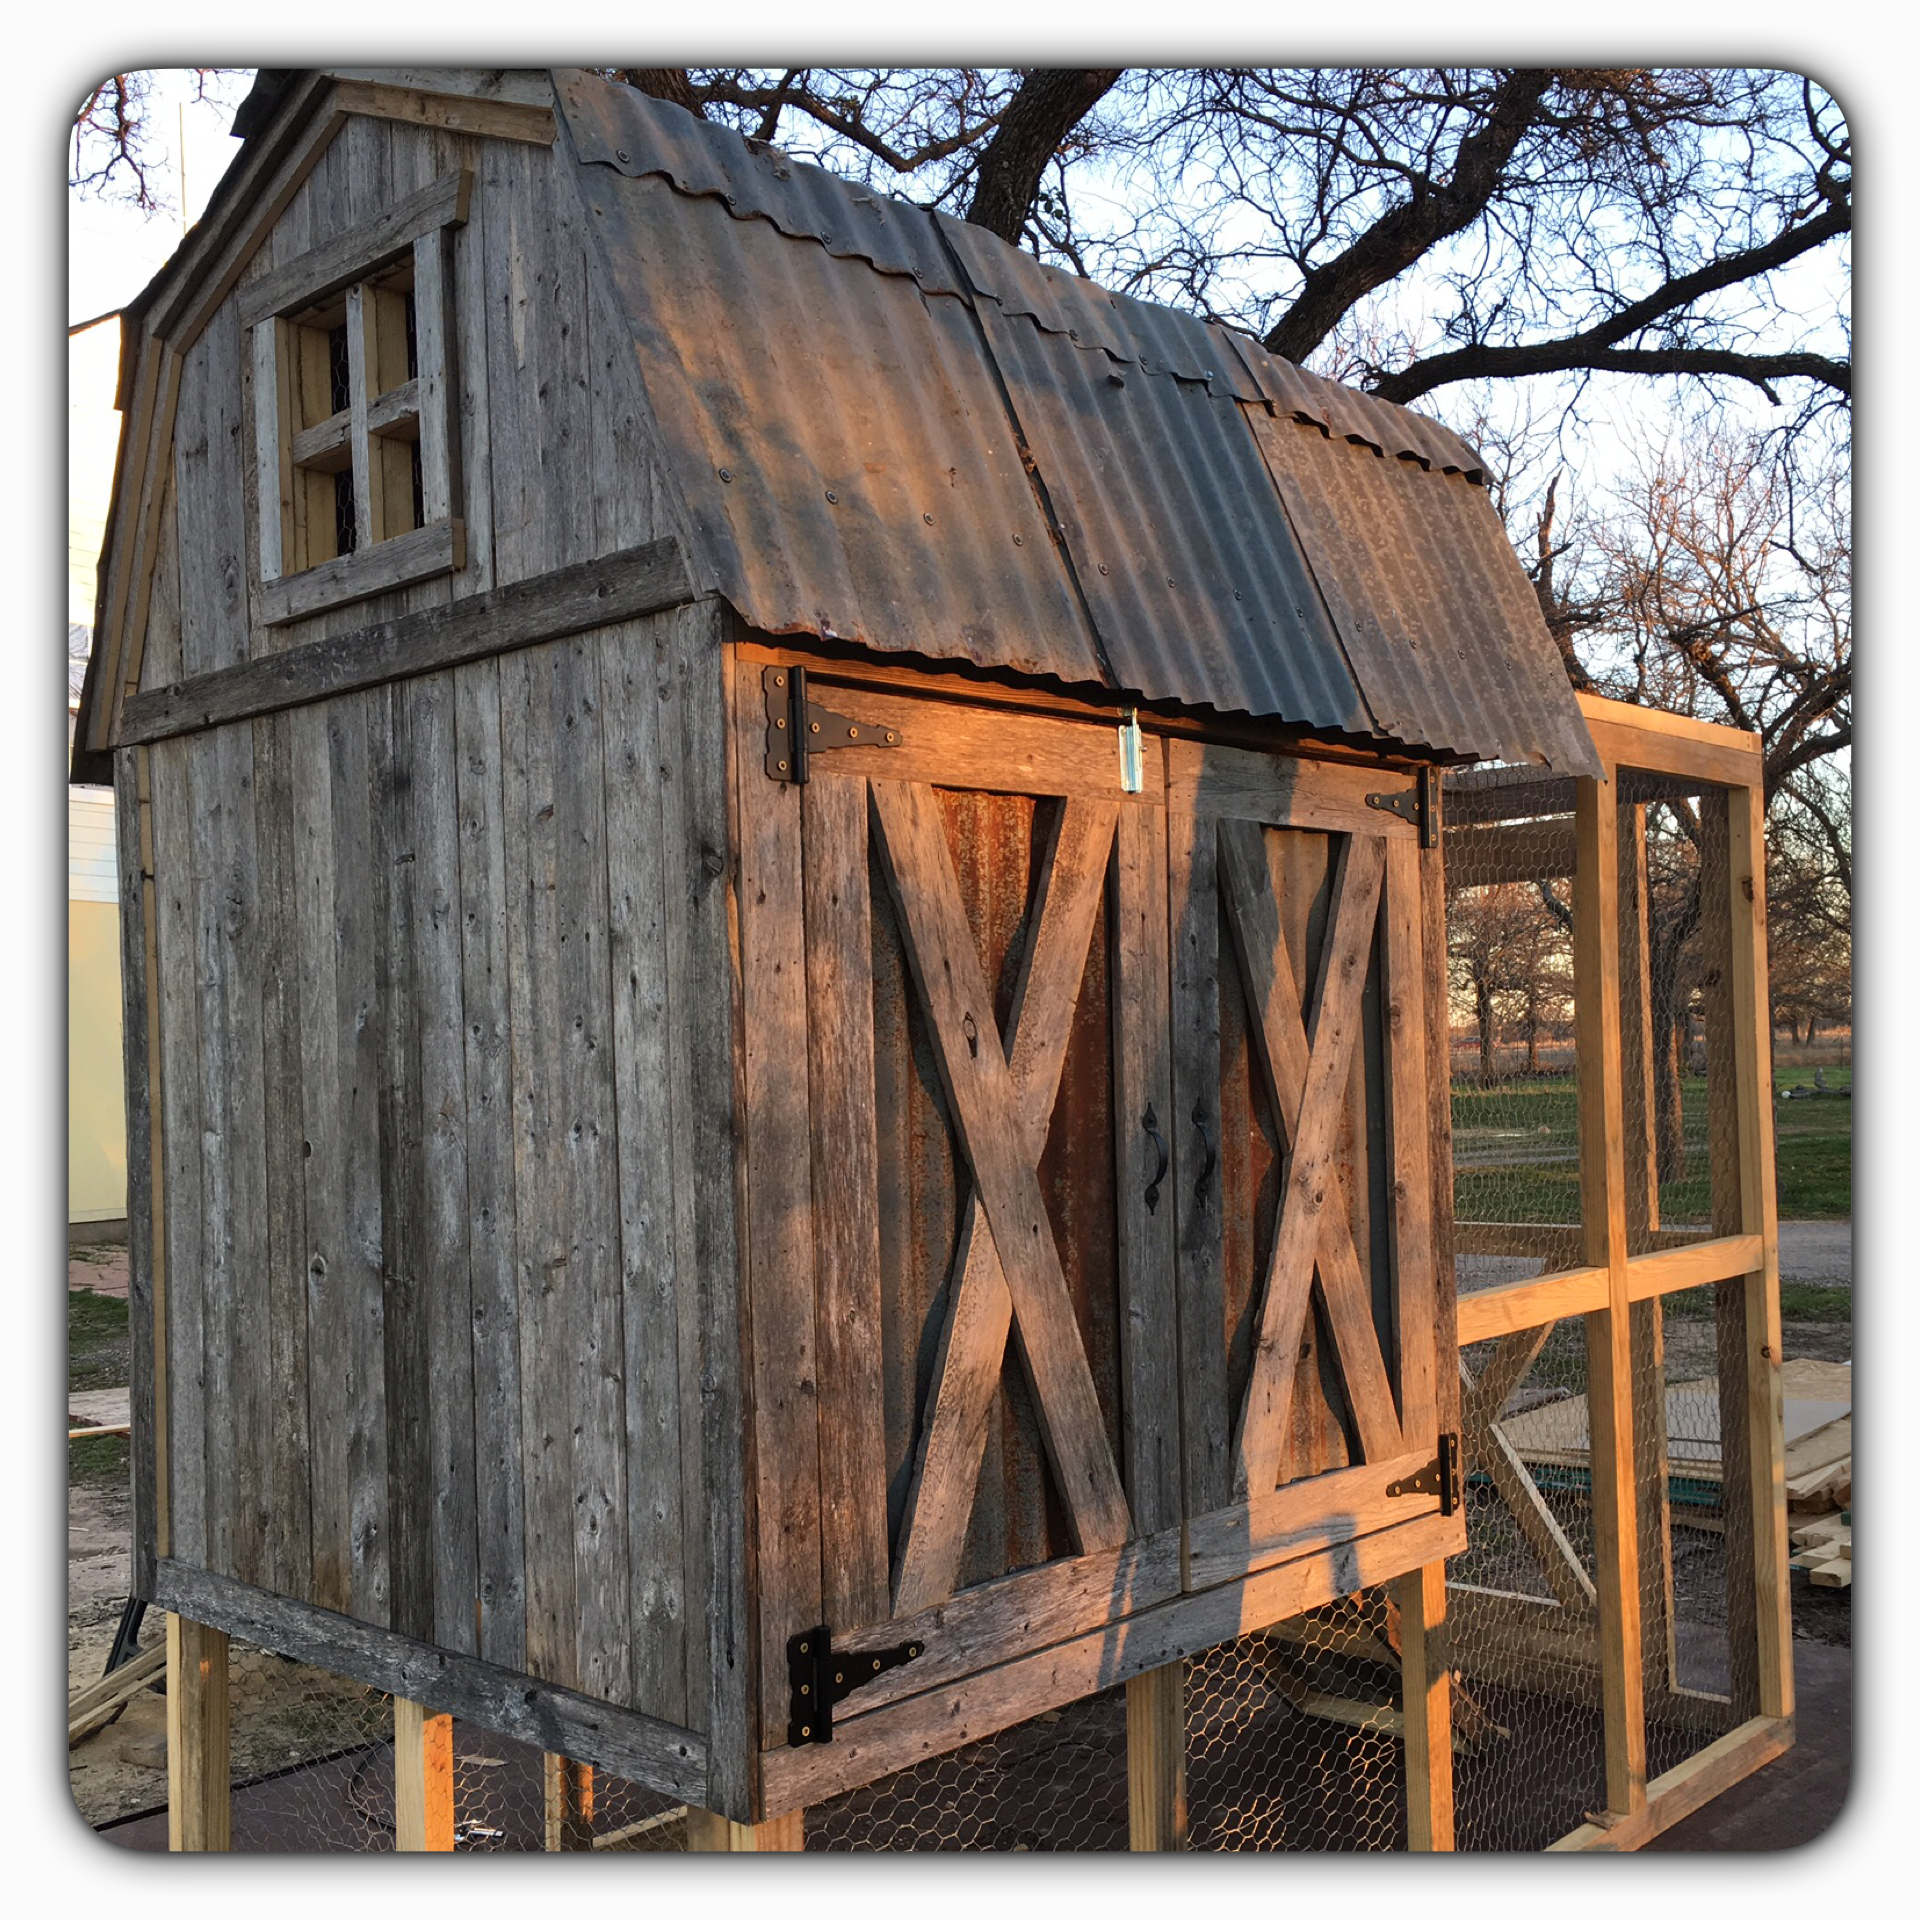 The Vintage Barn Coop